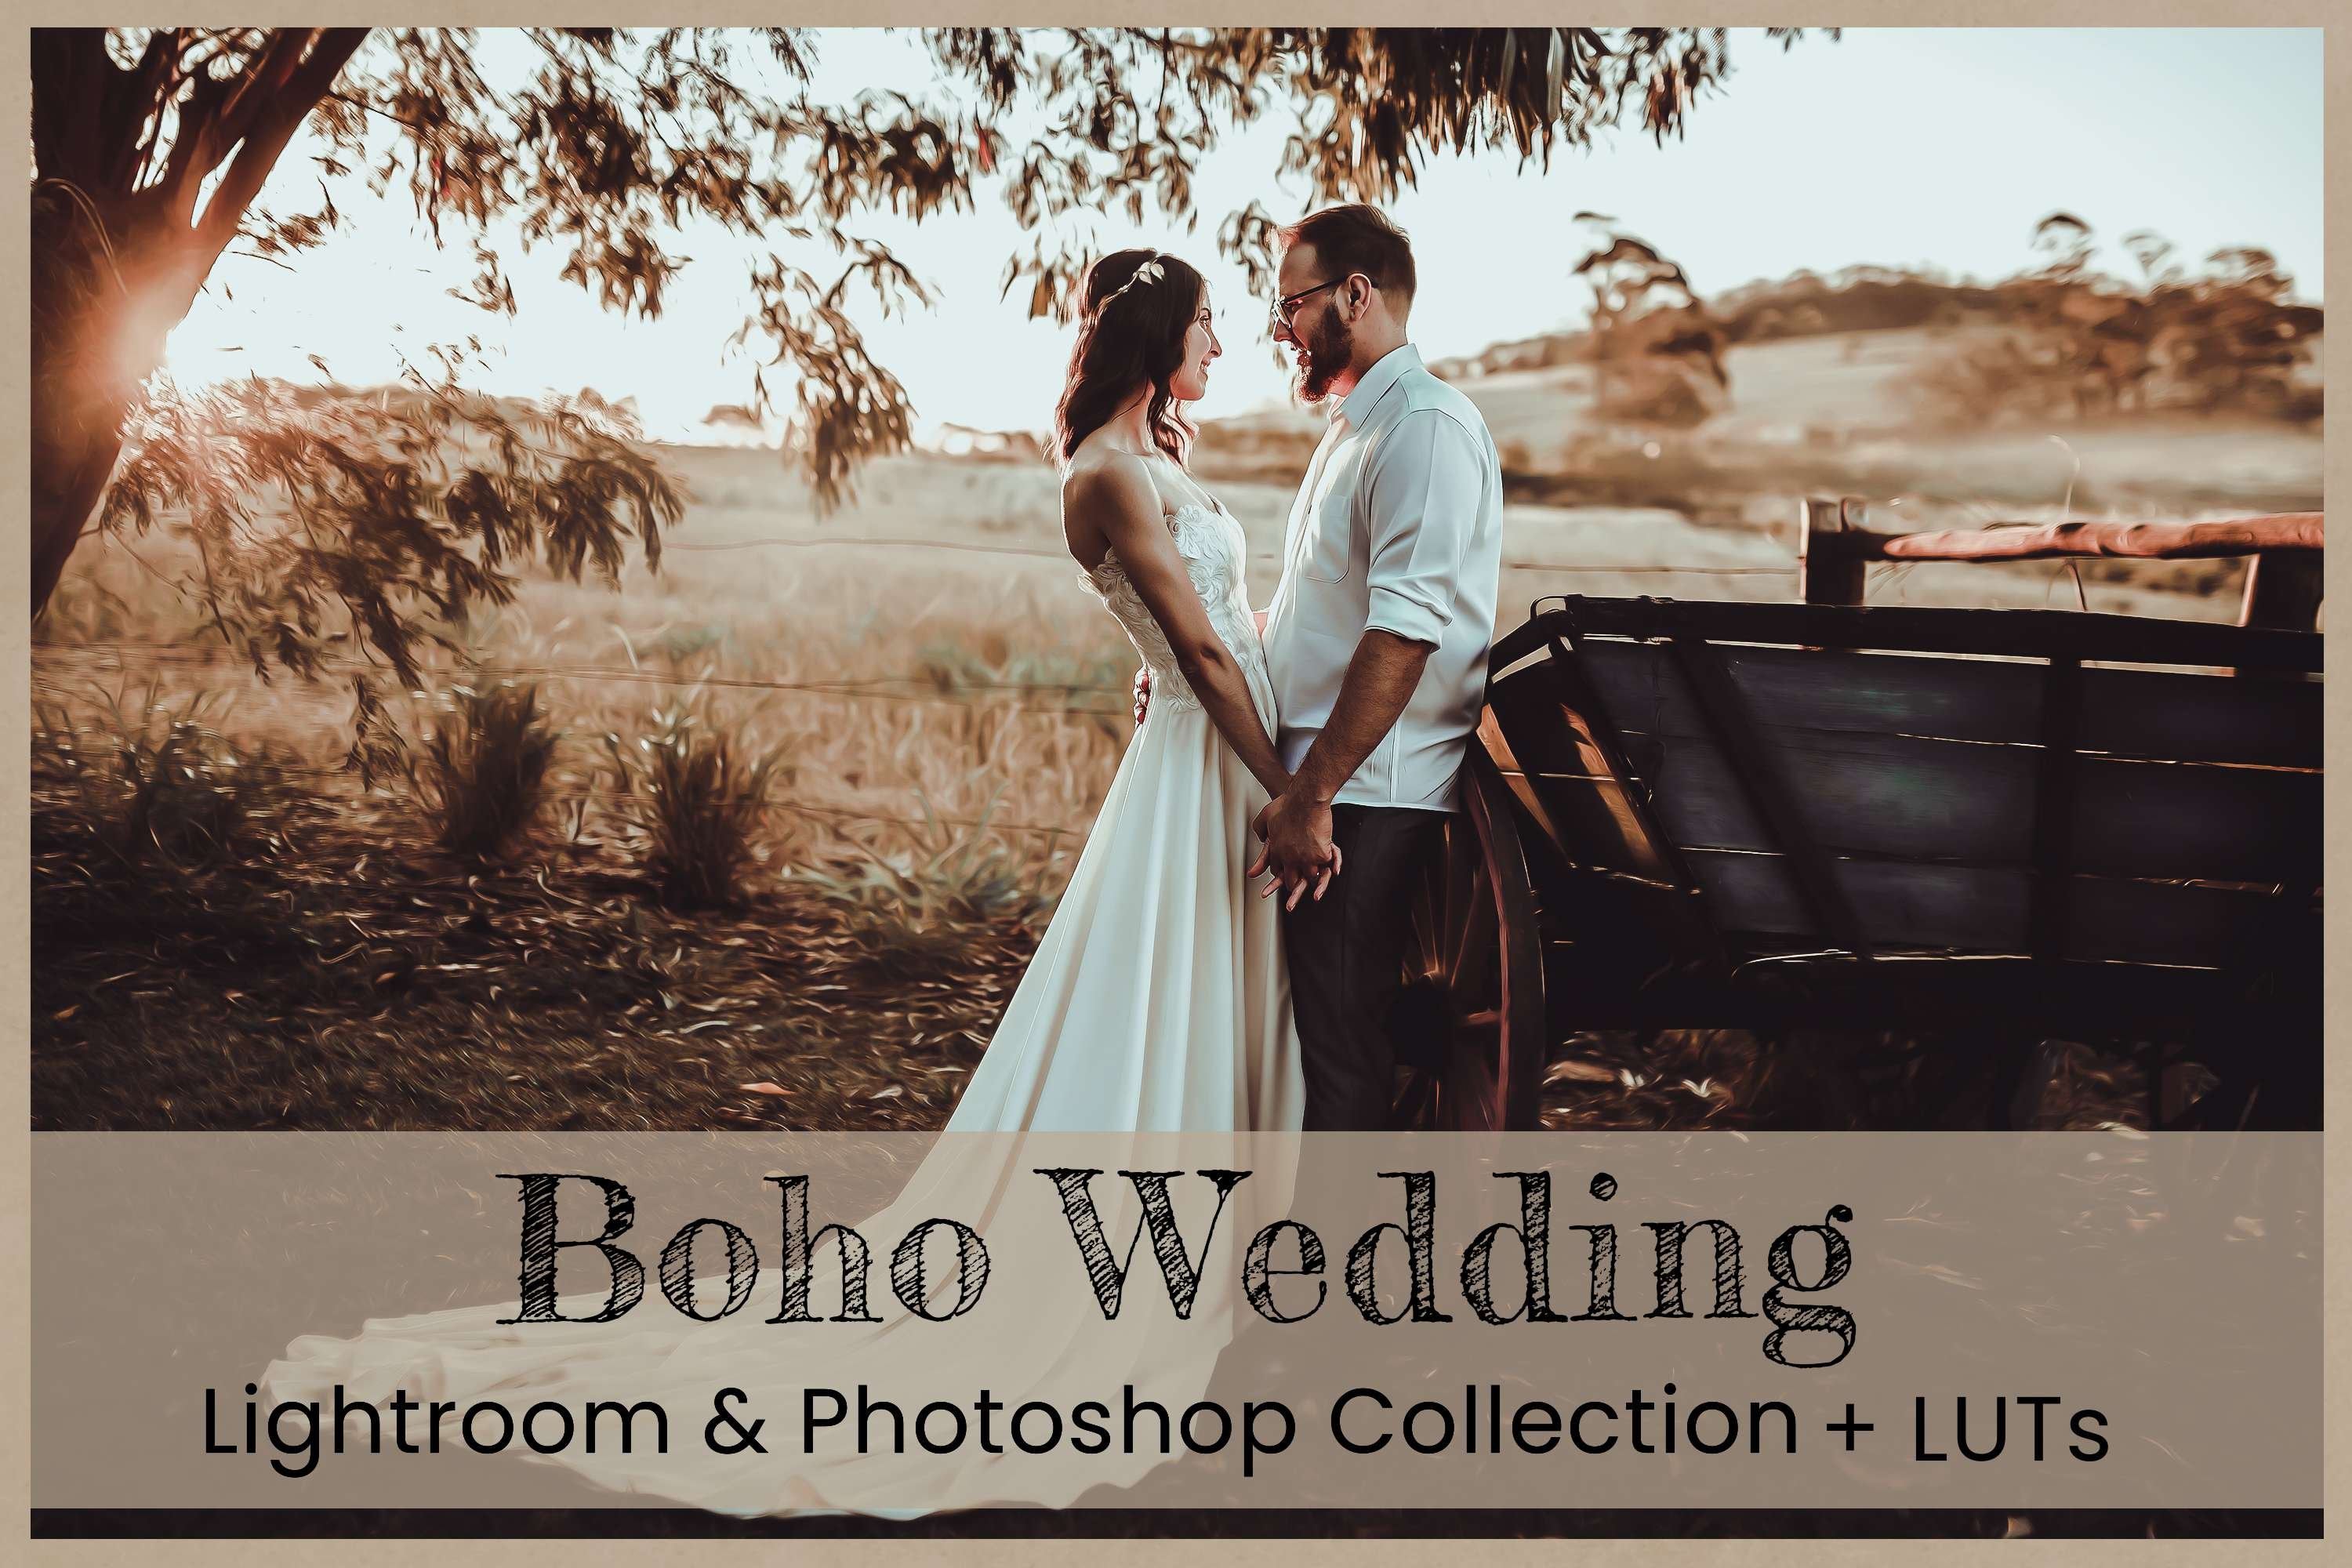 Boho Wedding Photoshop Actionscover image.